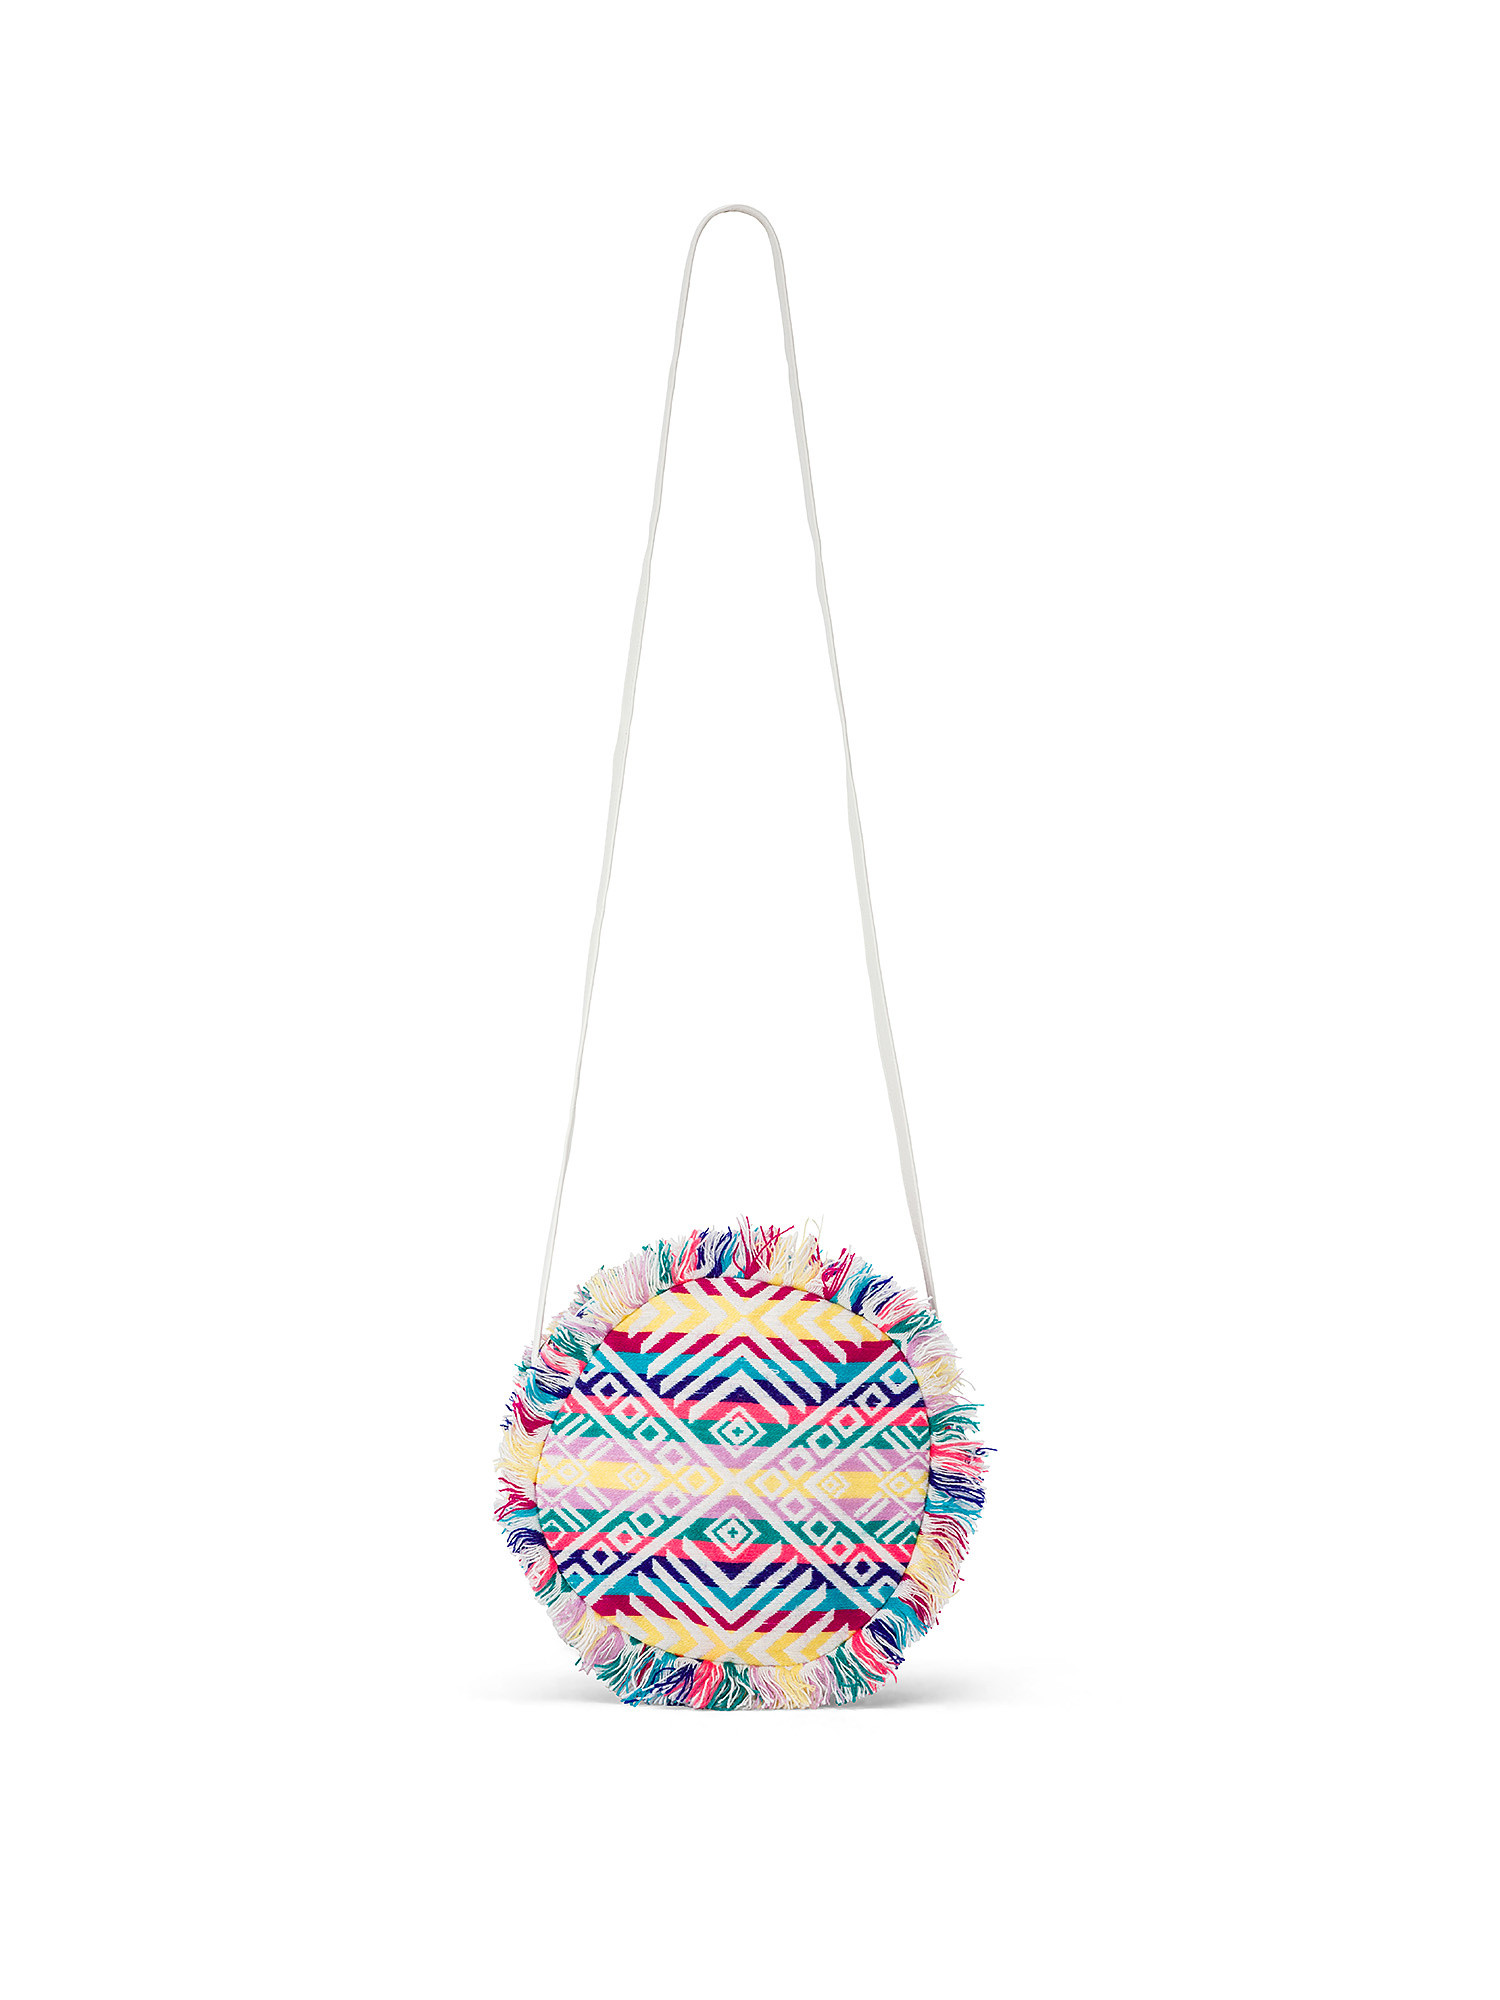 Koan - Patterned round shoulder bag, Multicolor, large image number 0